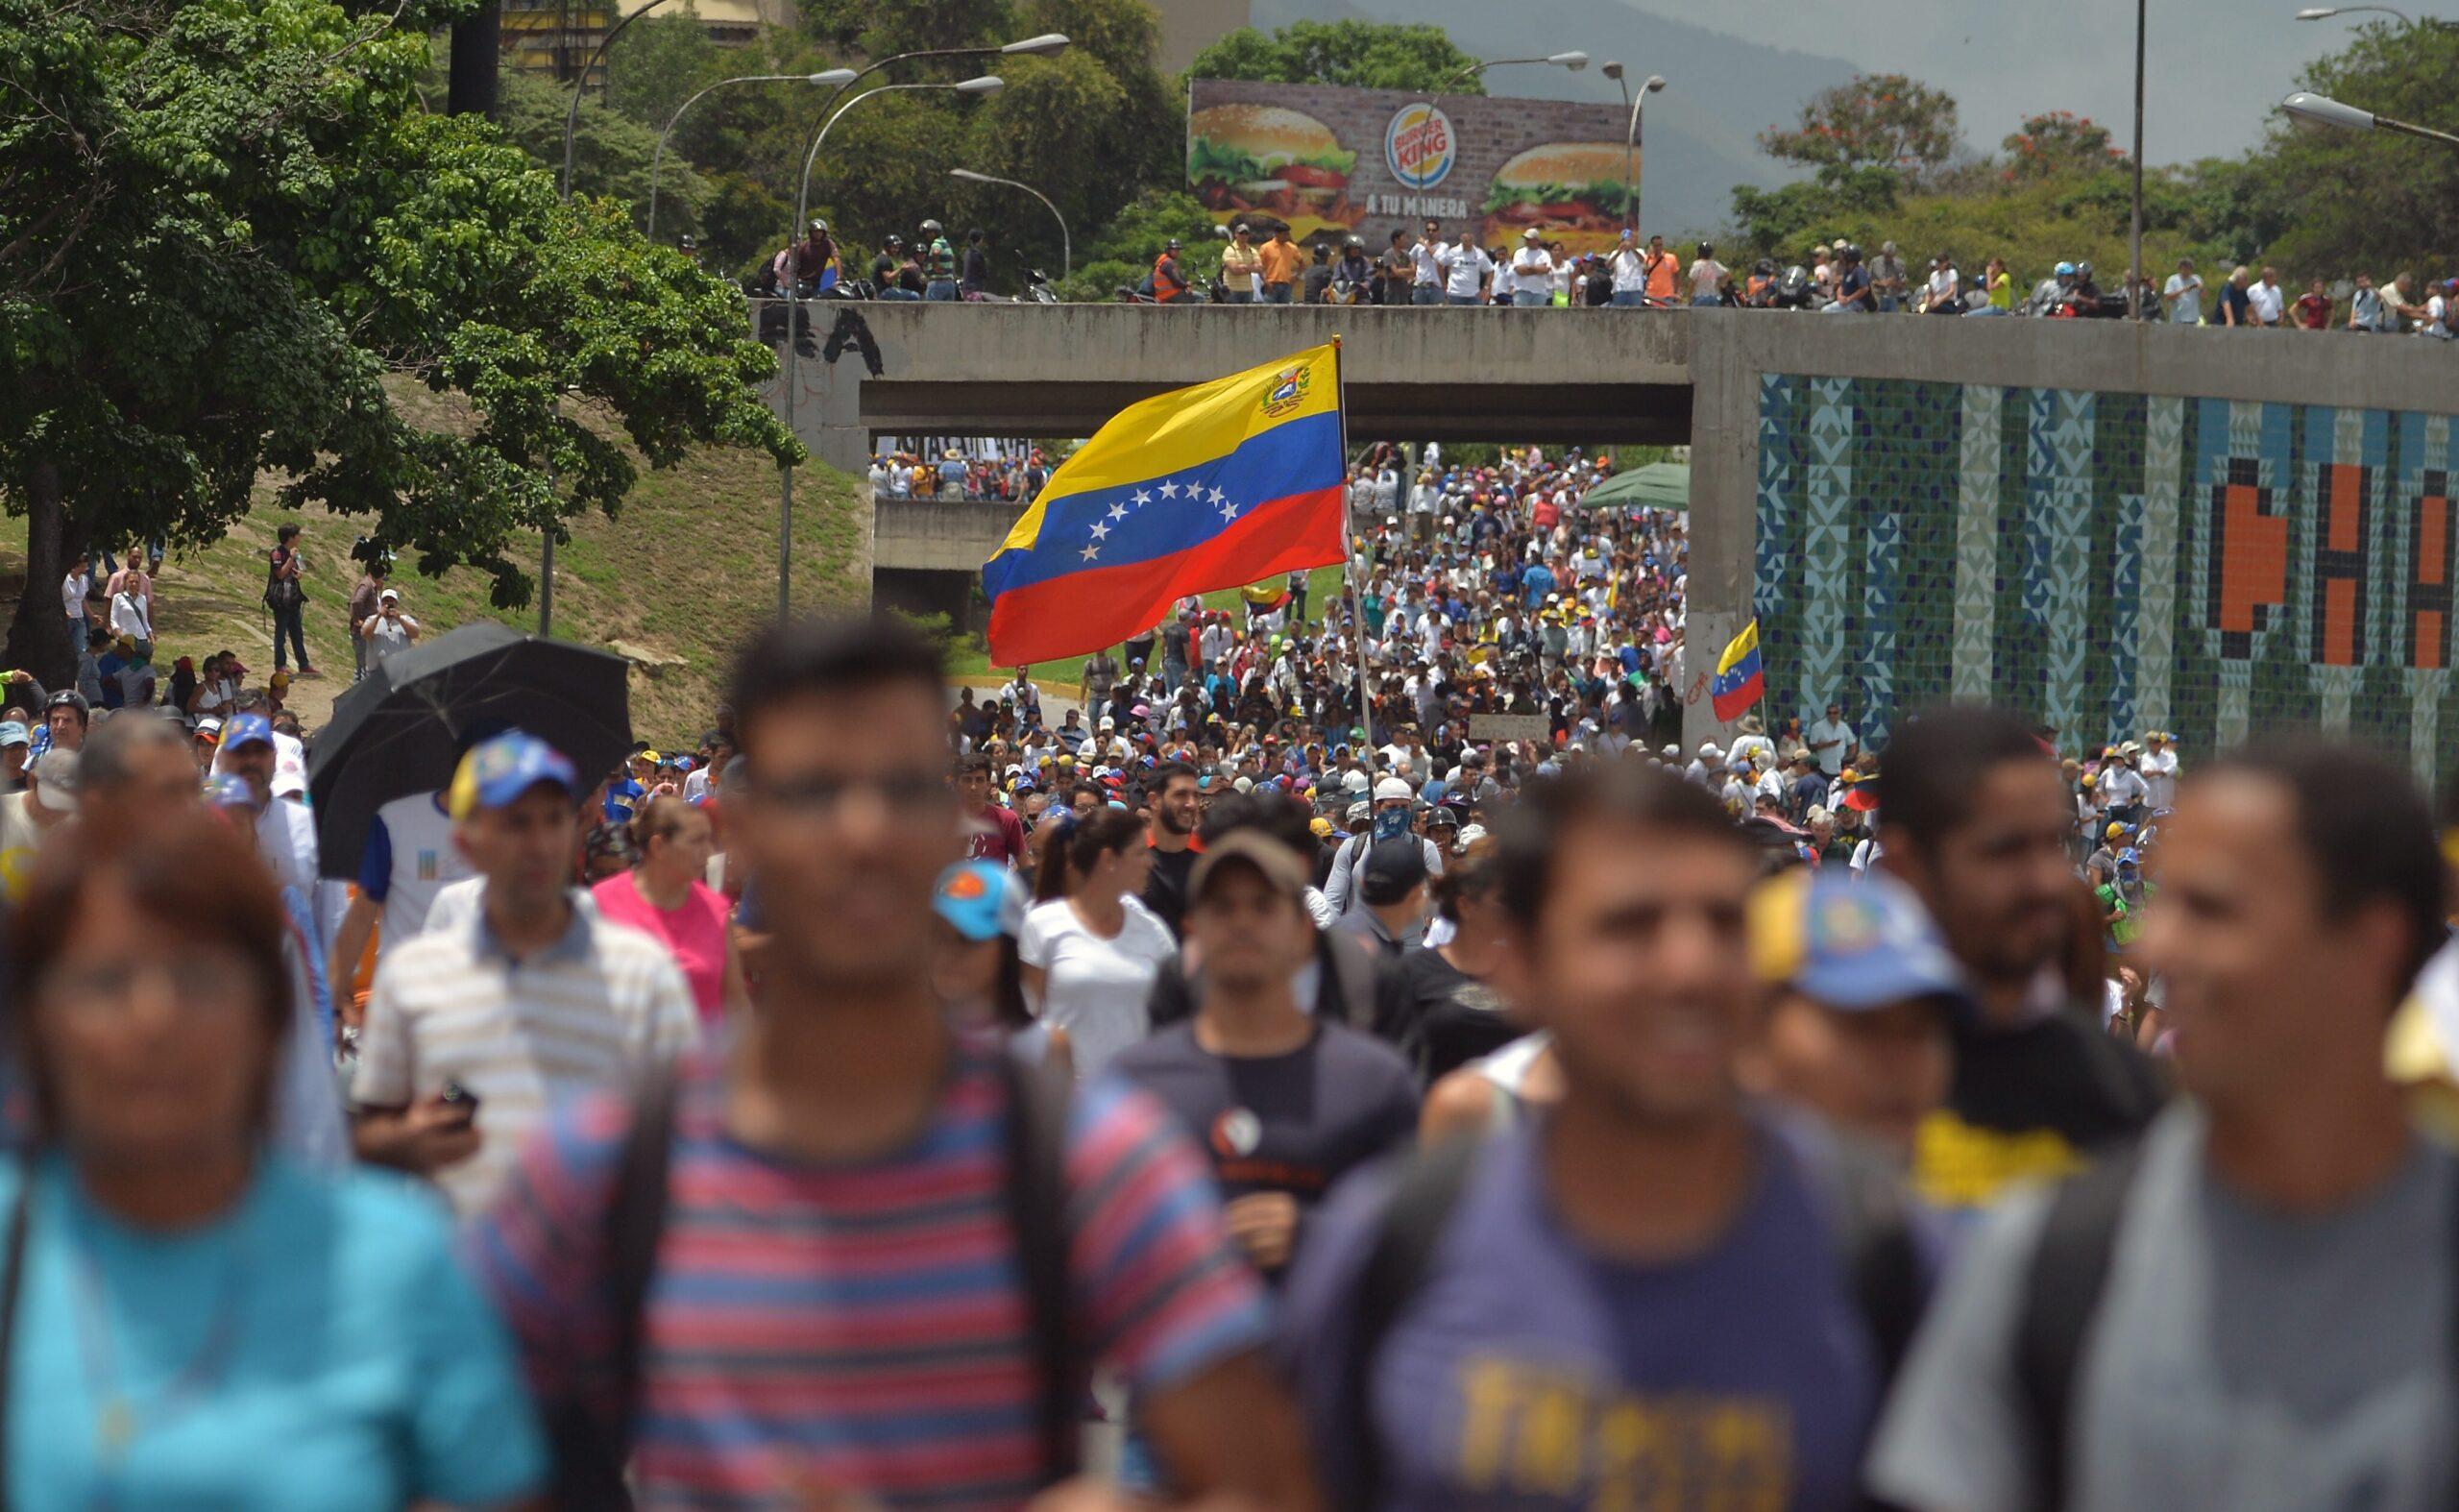 ¿Cómo inició? ¿Por qué la confrontación? Cinco puntos para entender el conflicto en Venezuela